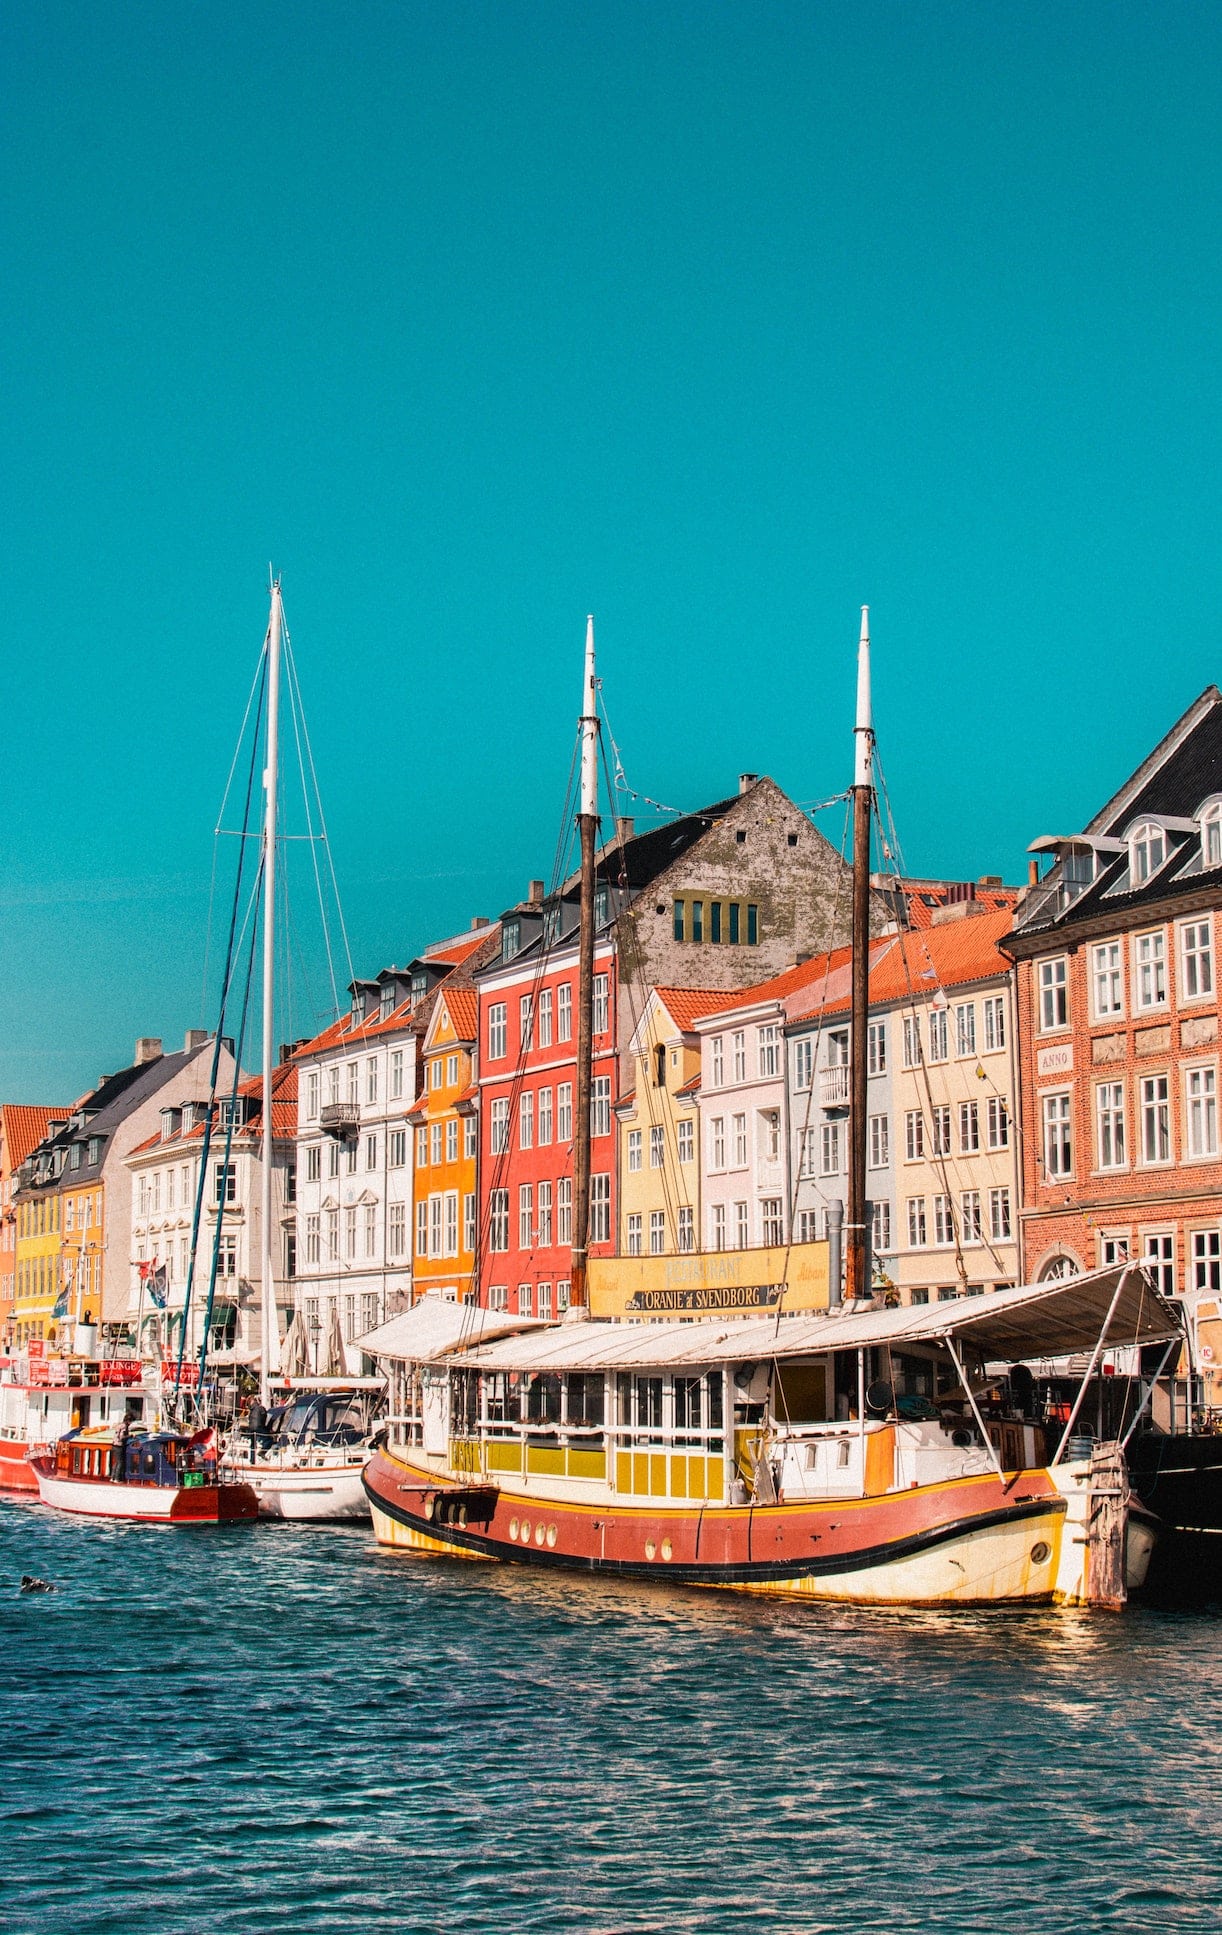 Copenhagen Denmark Cities in Europe to Visit